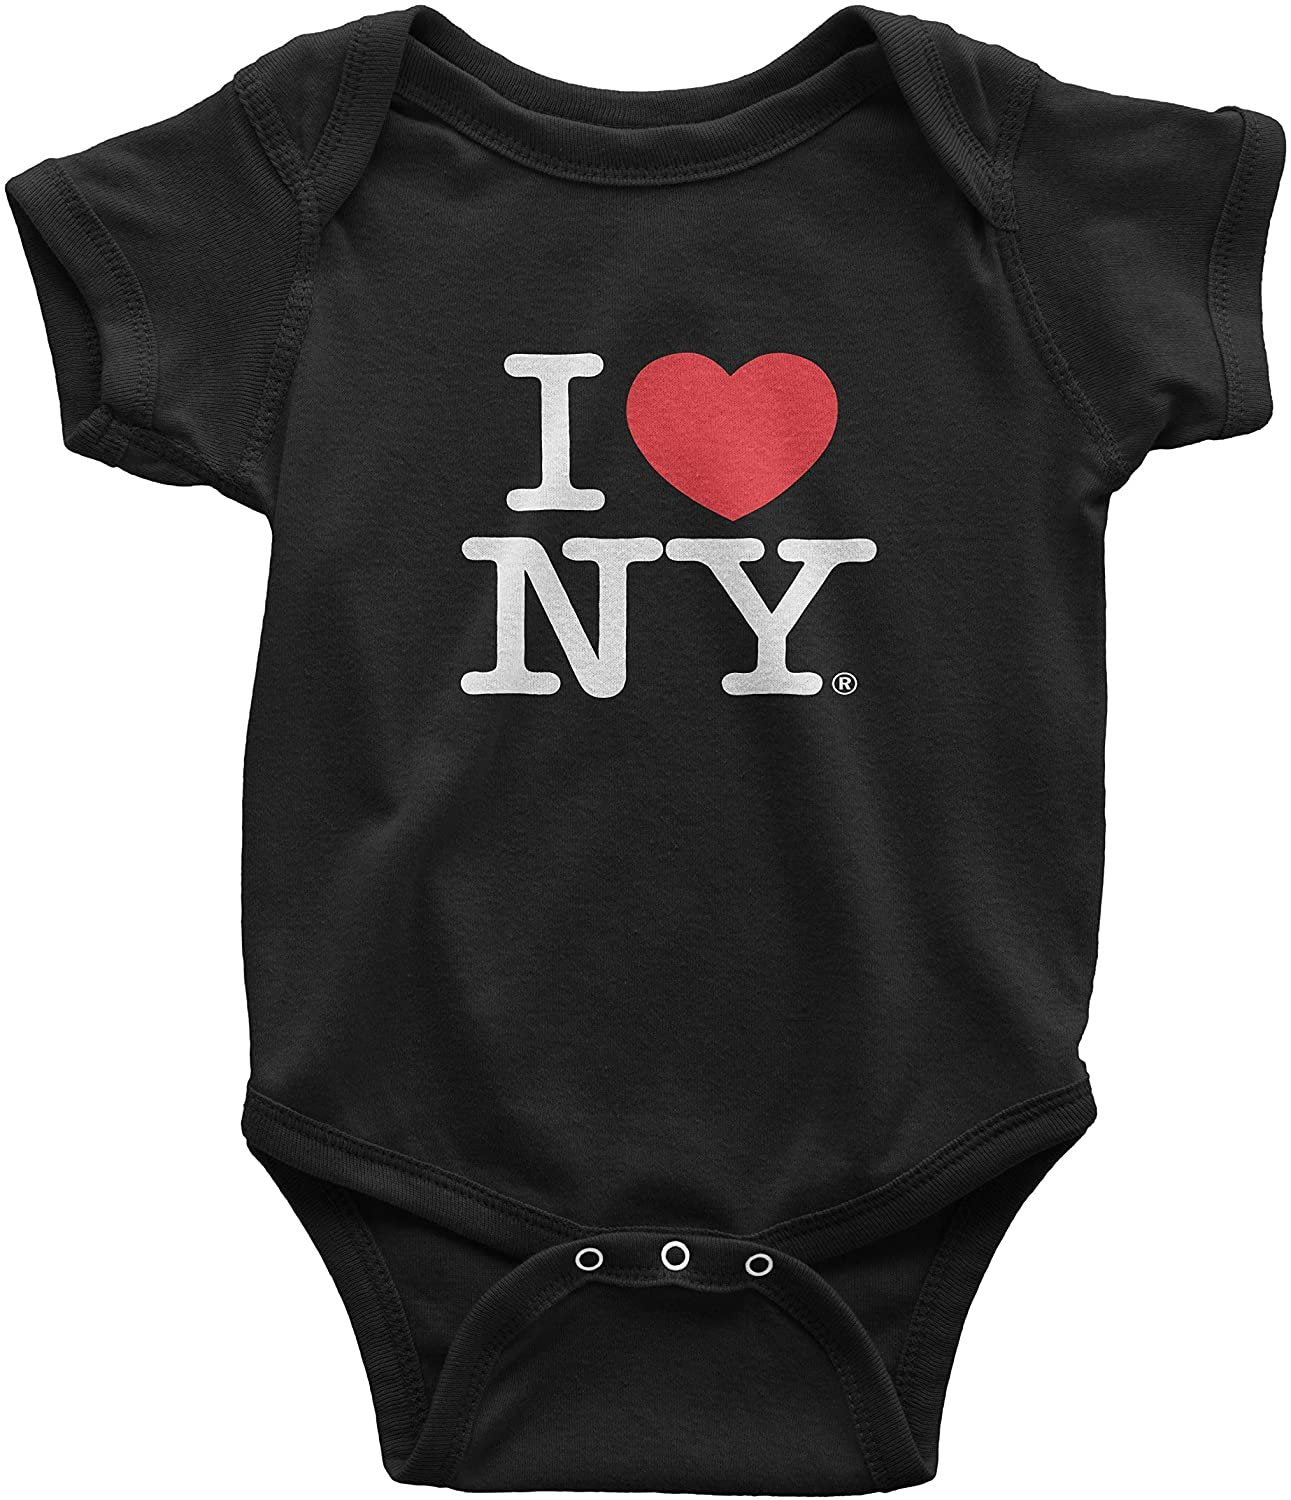 I Love NY Baby Bodysuit Black